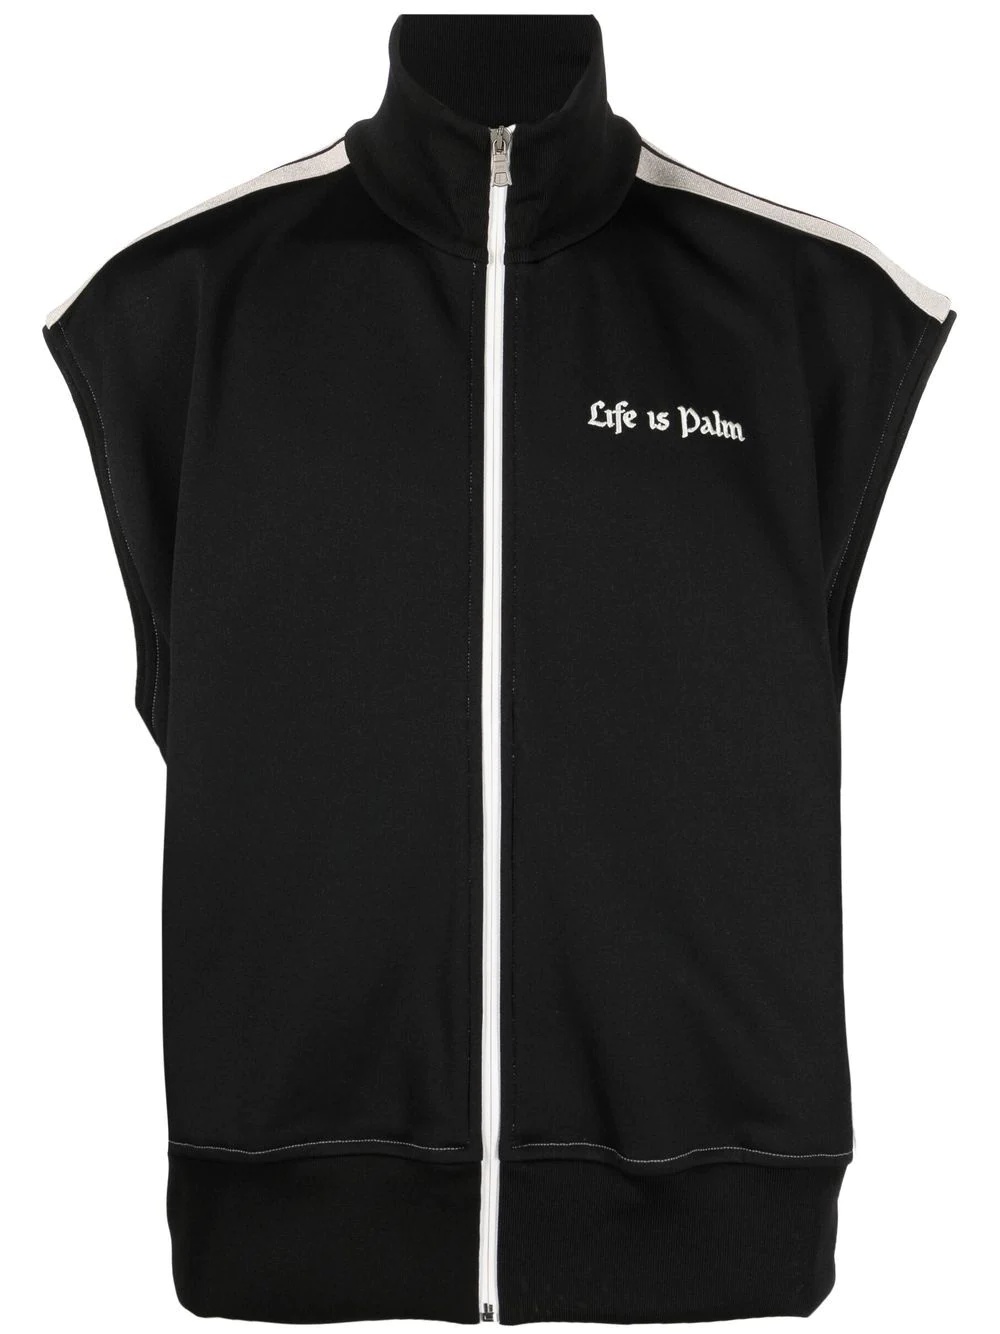 slogan-print sleeveless sport jacket - 1